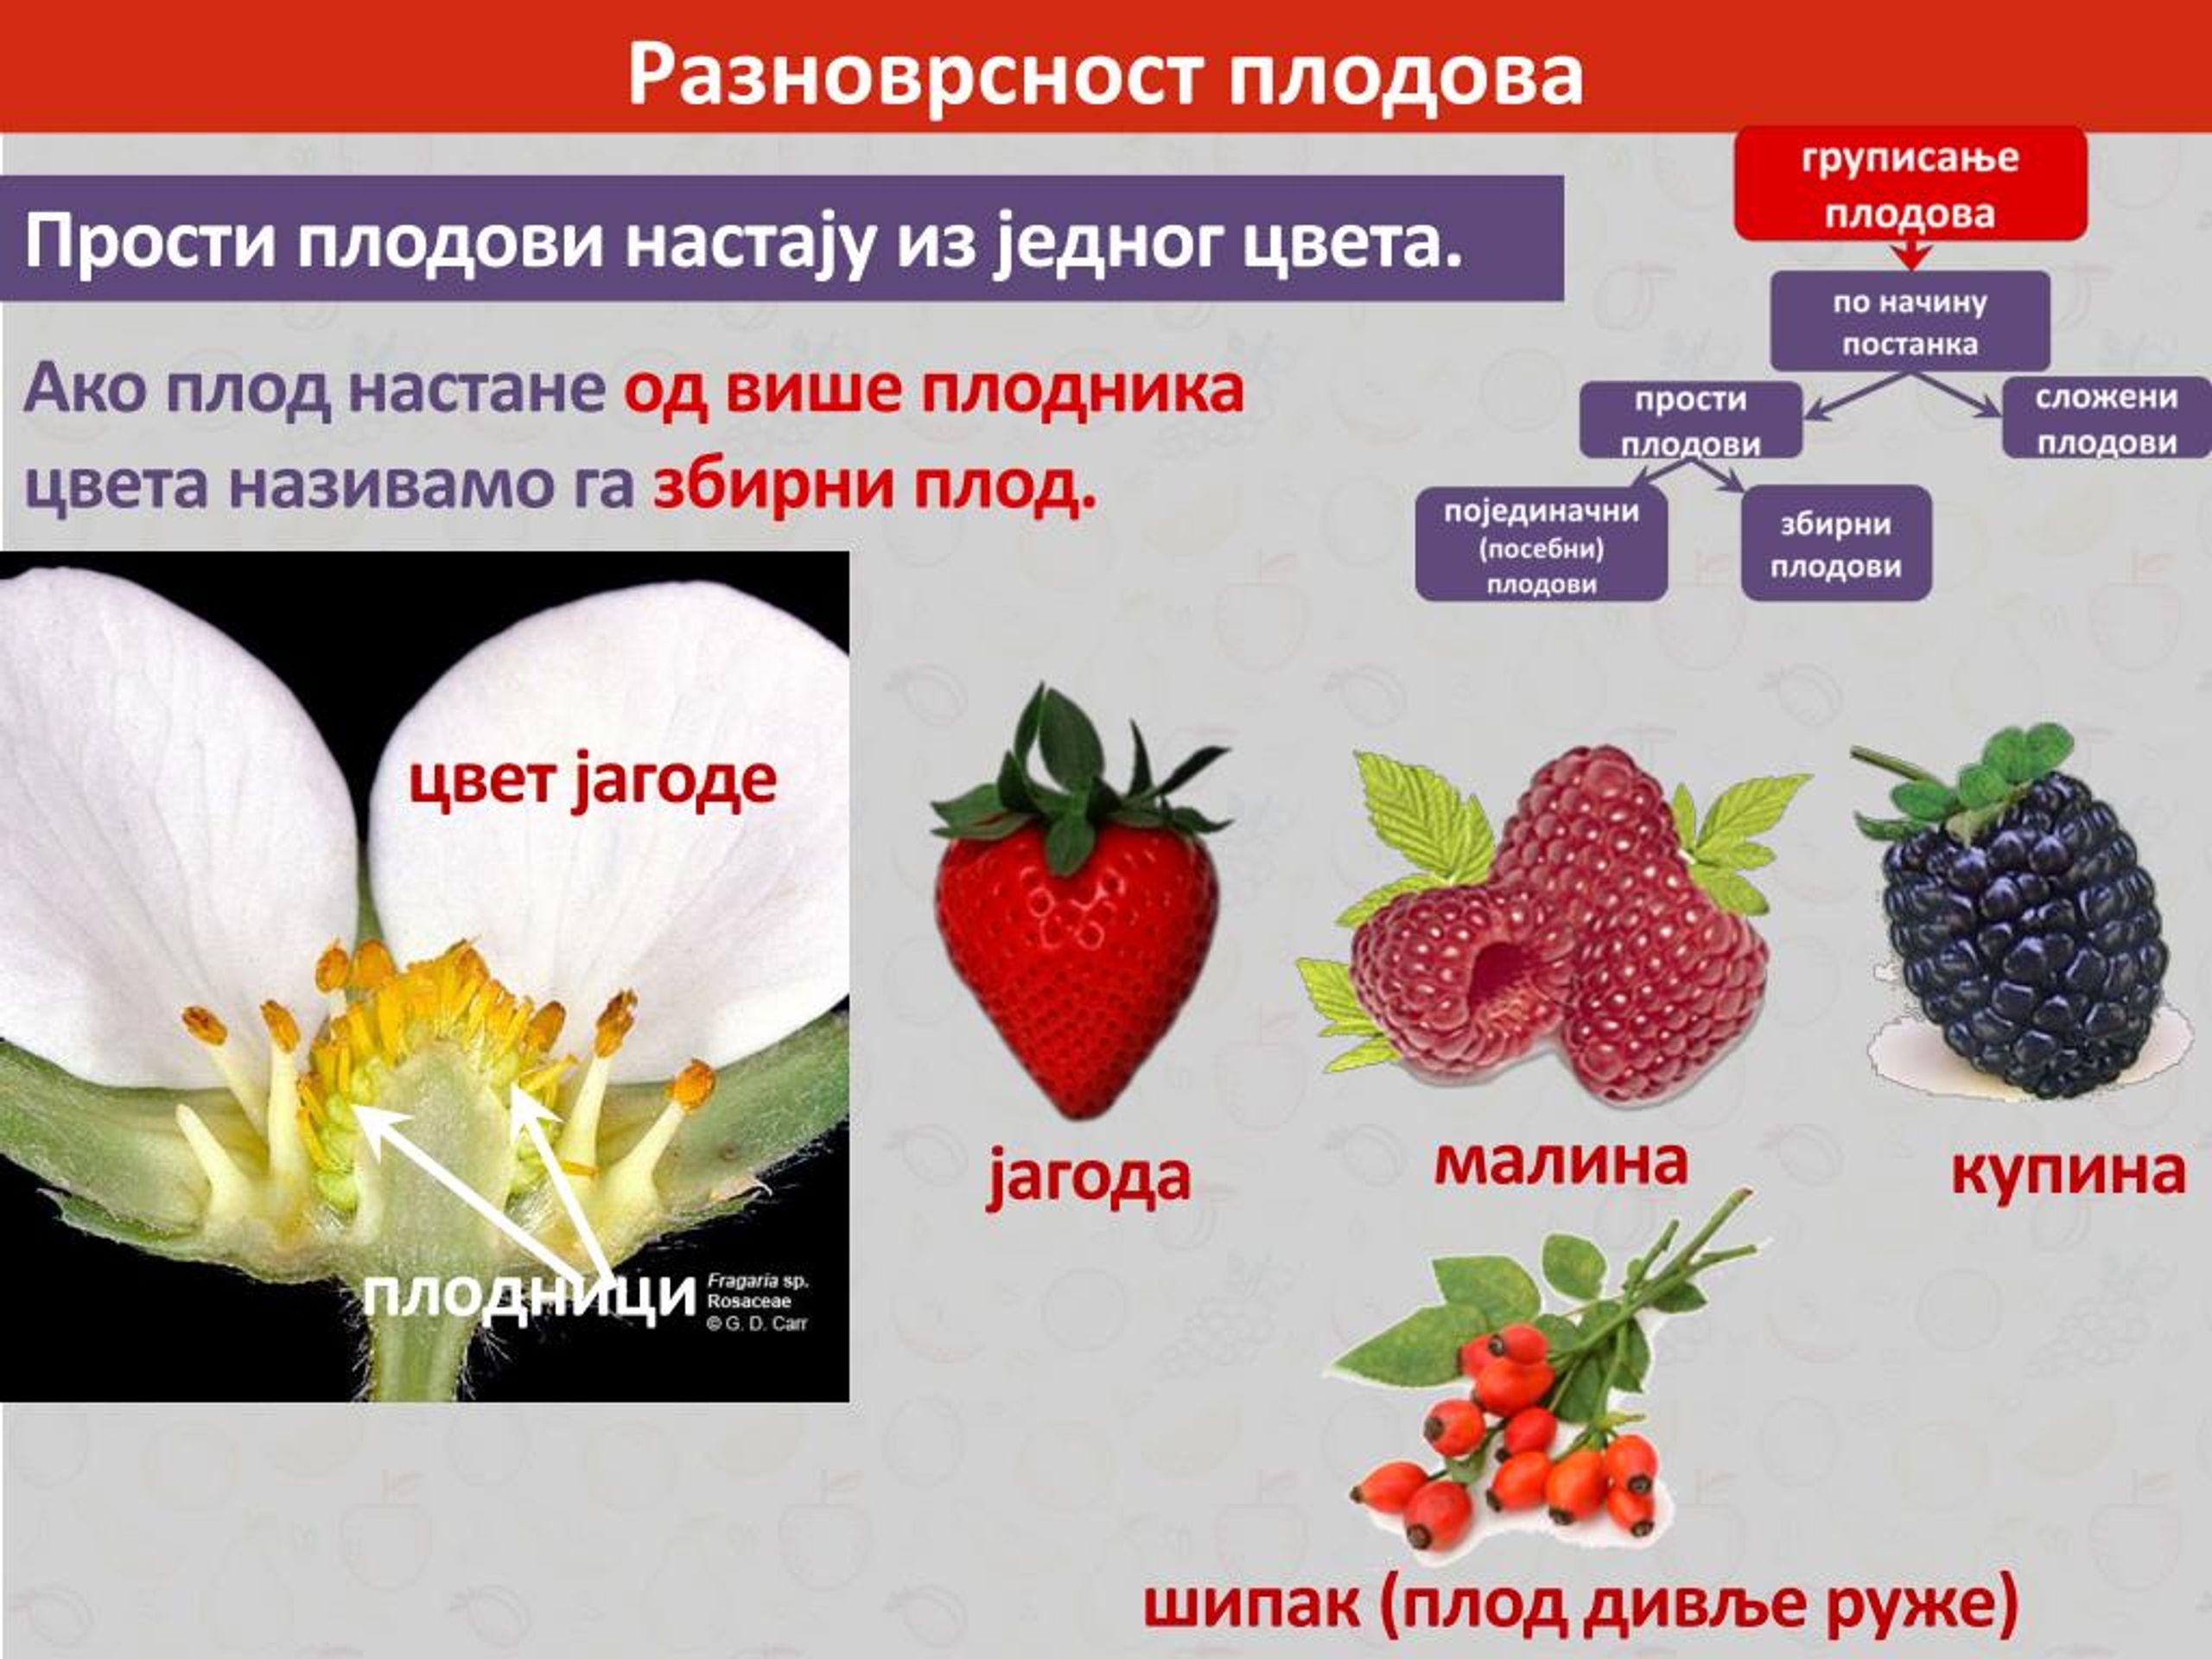 Функции плода у растений. Какую функцию выполняет плод у растений. Семейство Розоцветные строение цветка. Название частей плодника.